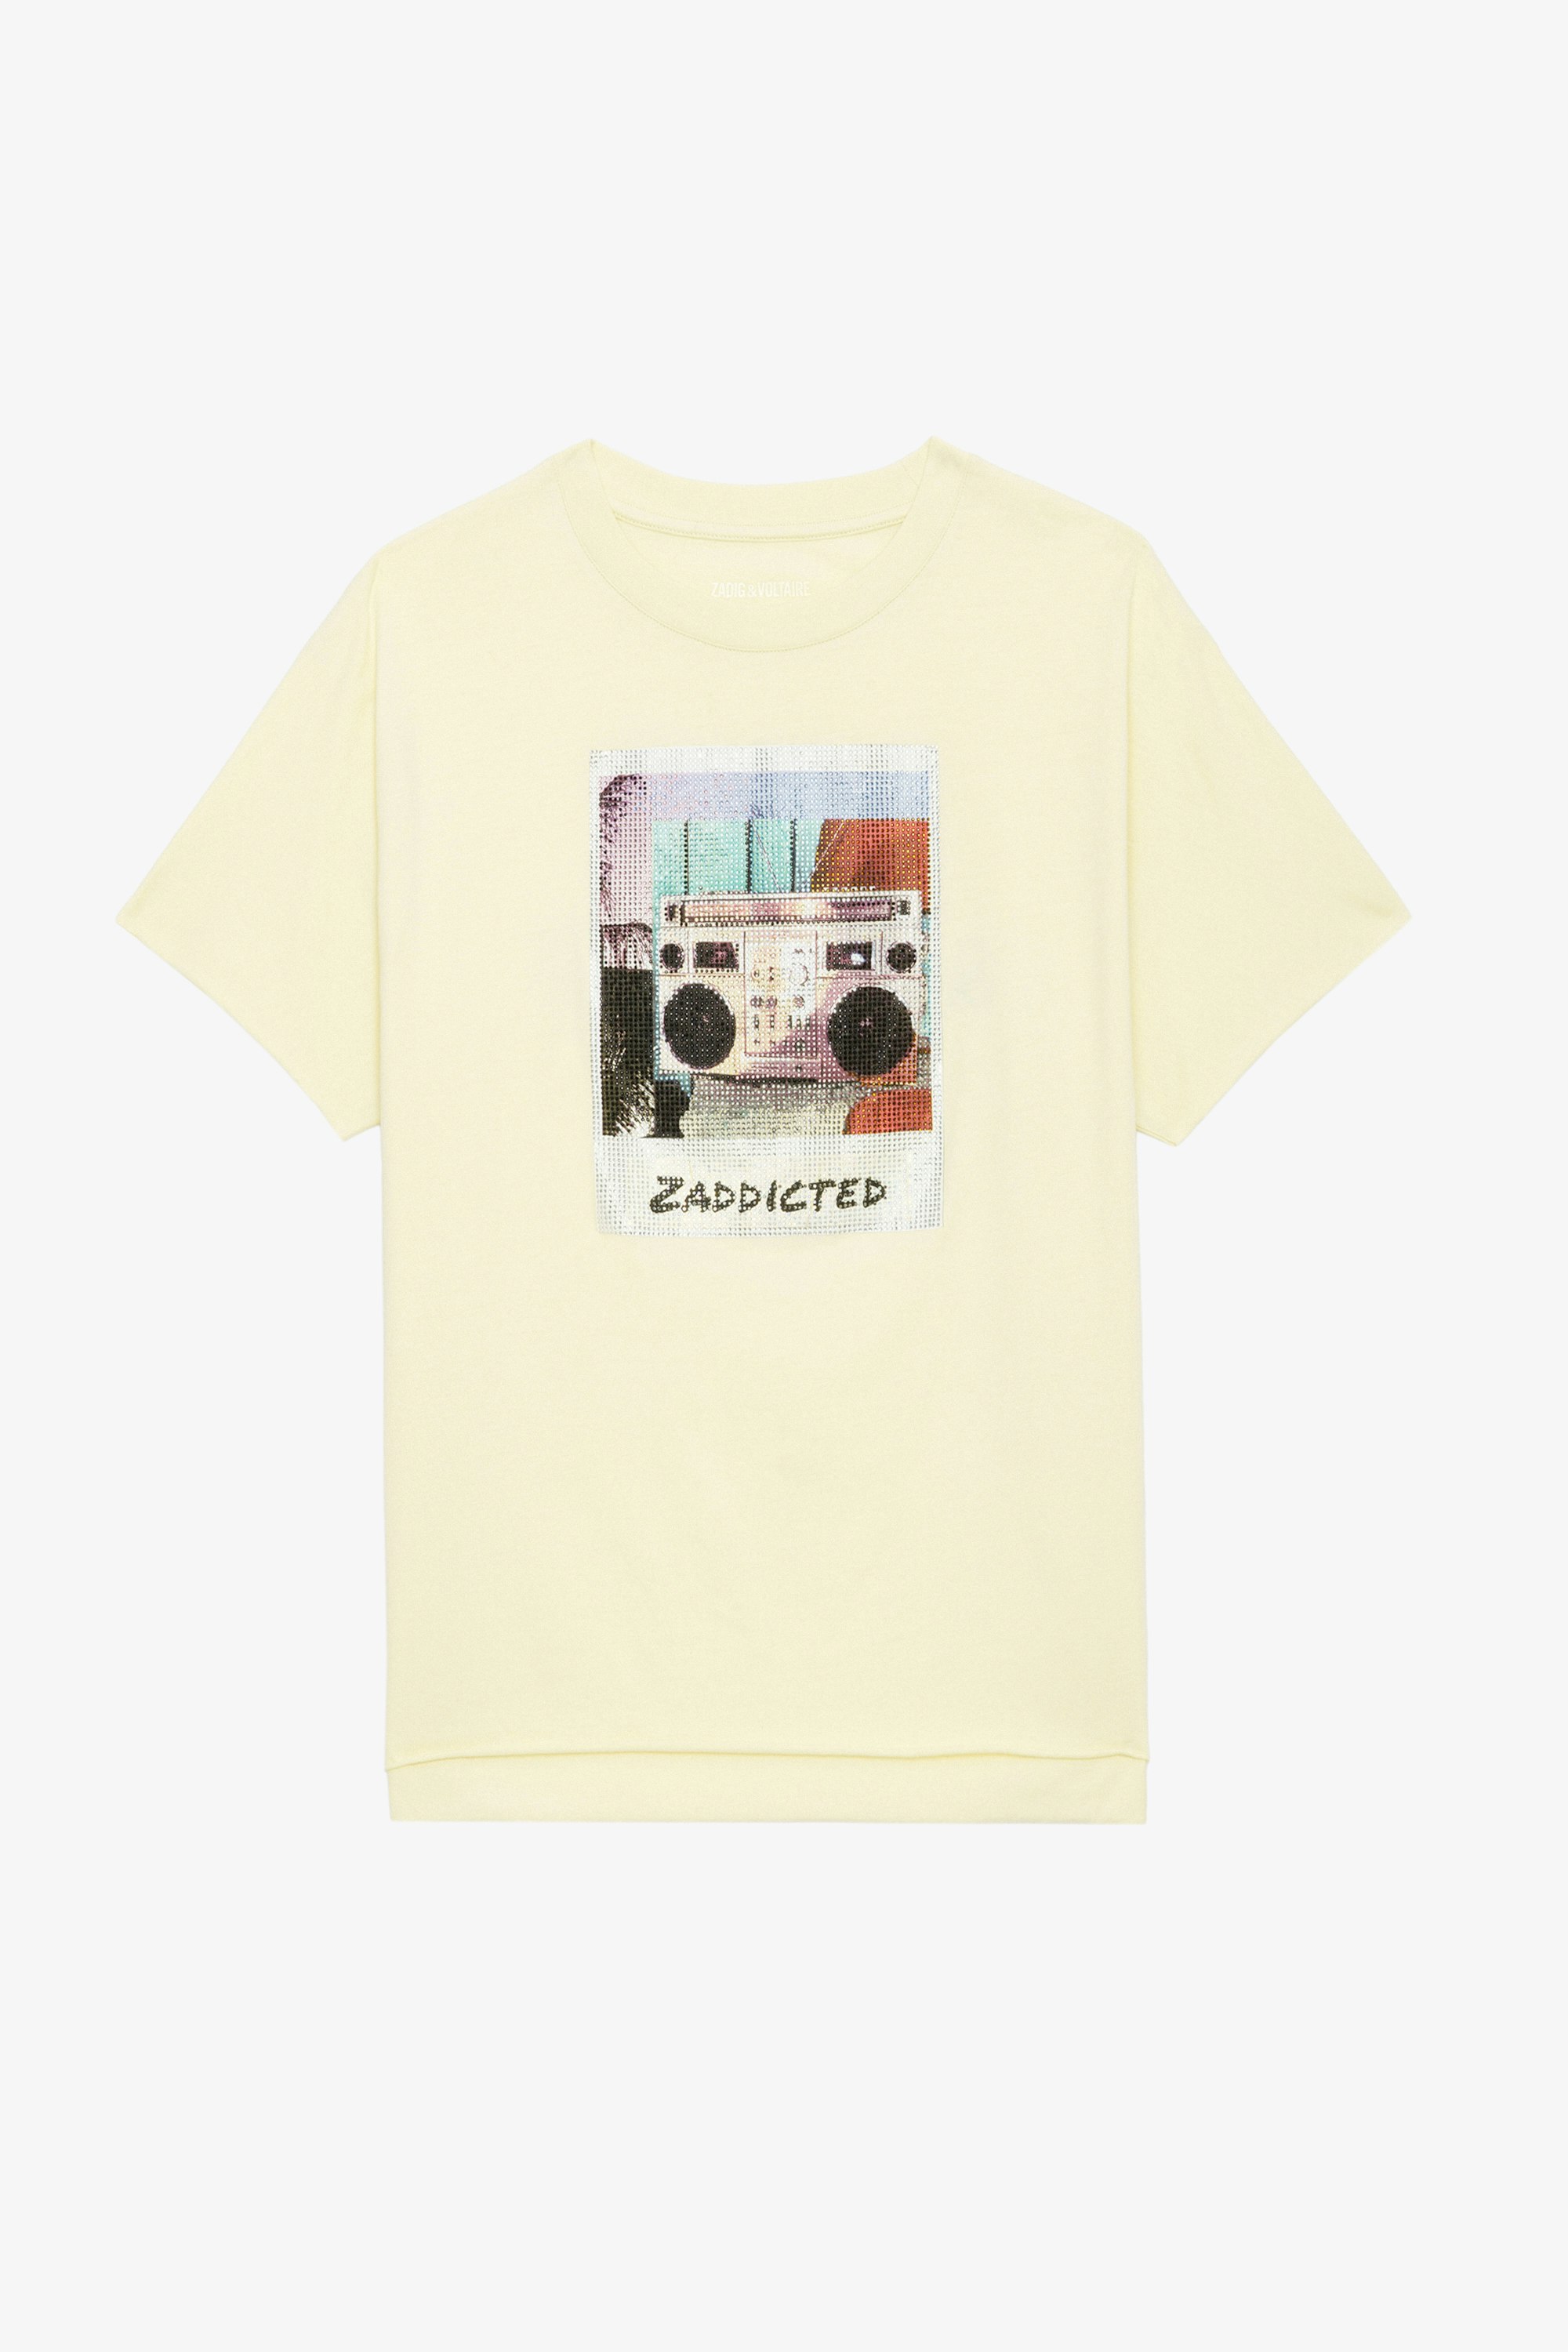 Camiseta Tommer Estampado Fotográfico Strass - Camiseta de algodón en color amarillo claro con mangas cortas y estampado fotográfico Ghetto Blaster con strass.